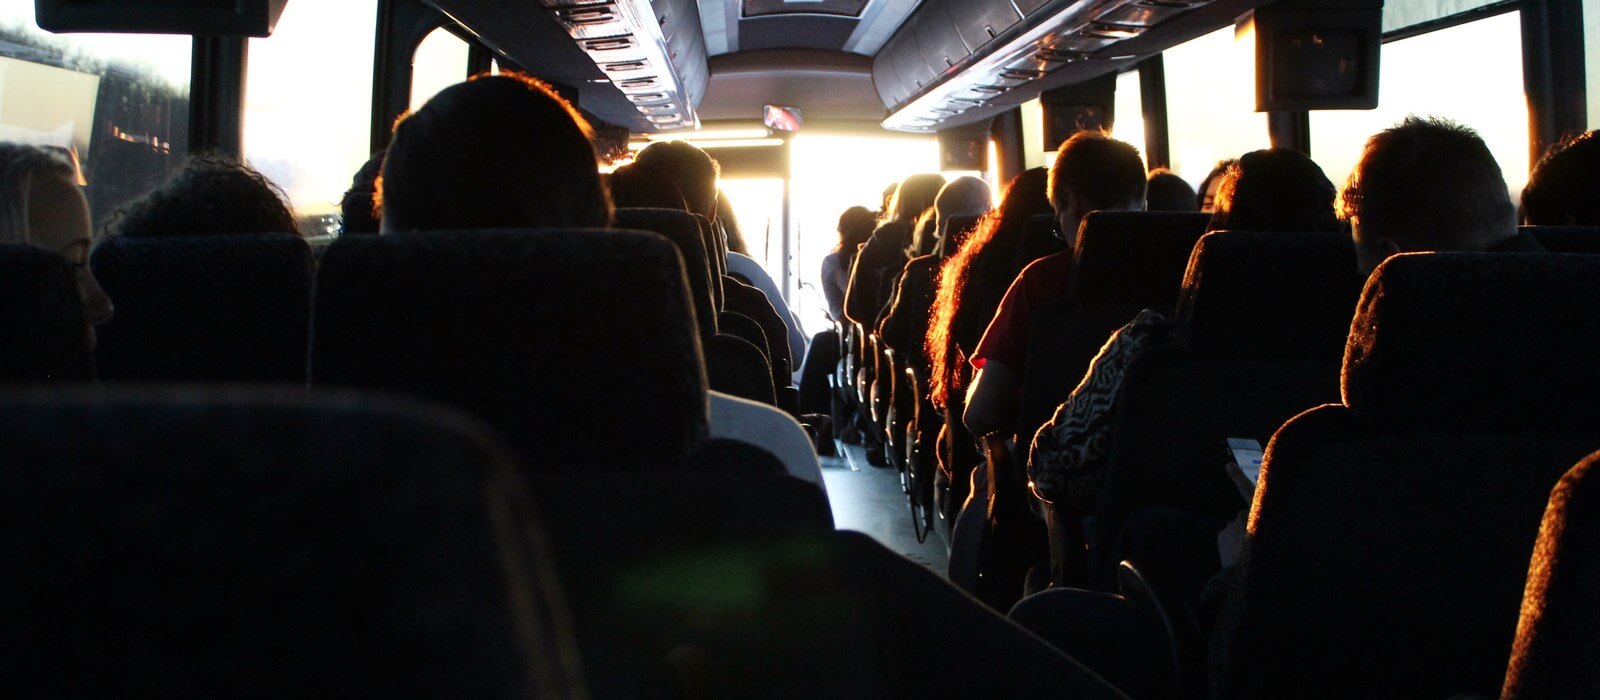 Babel Transportes Alsa. Interior de un autobús repleto de pasajeros